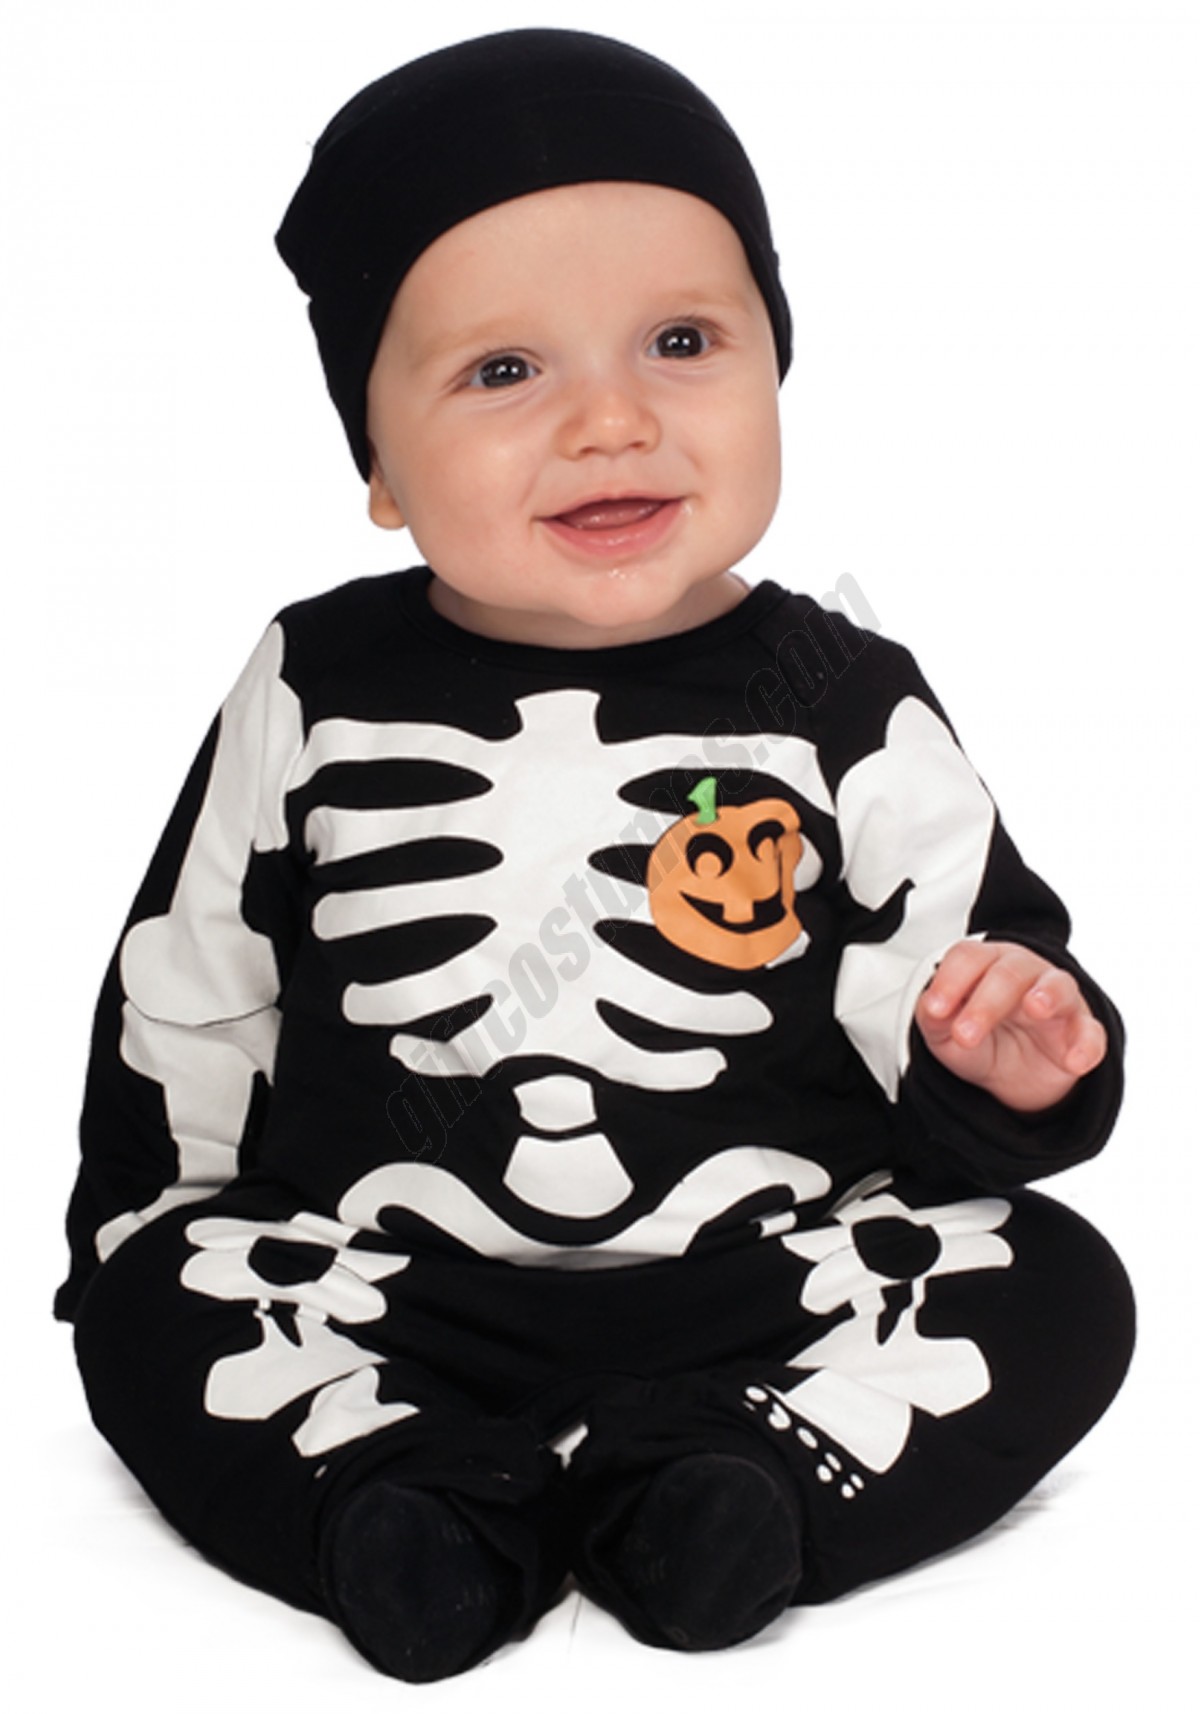 Infant Black Skeleton Costume Promotions - -0